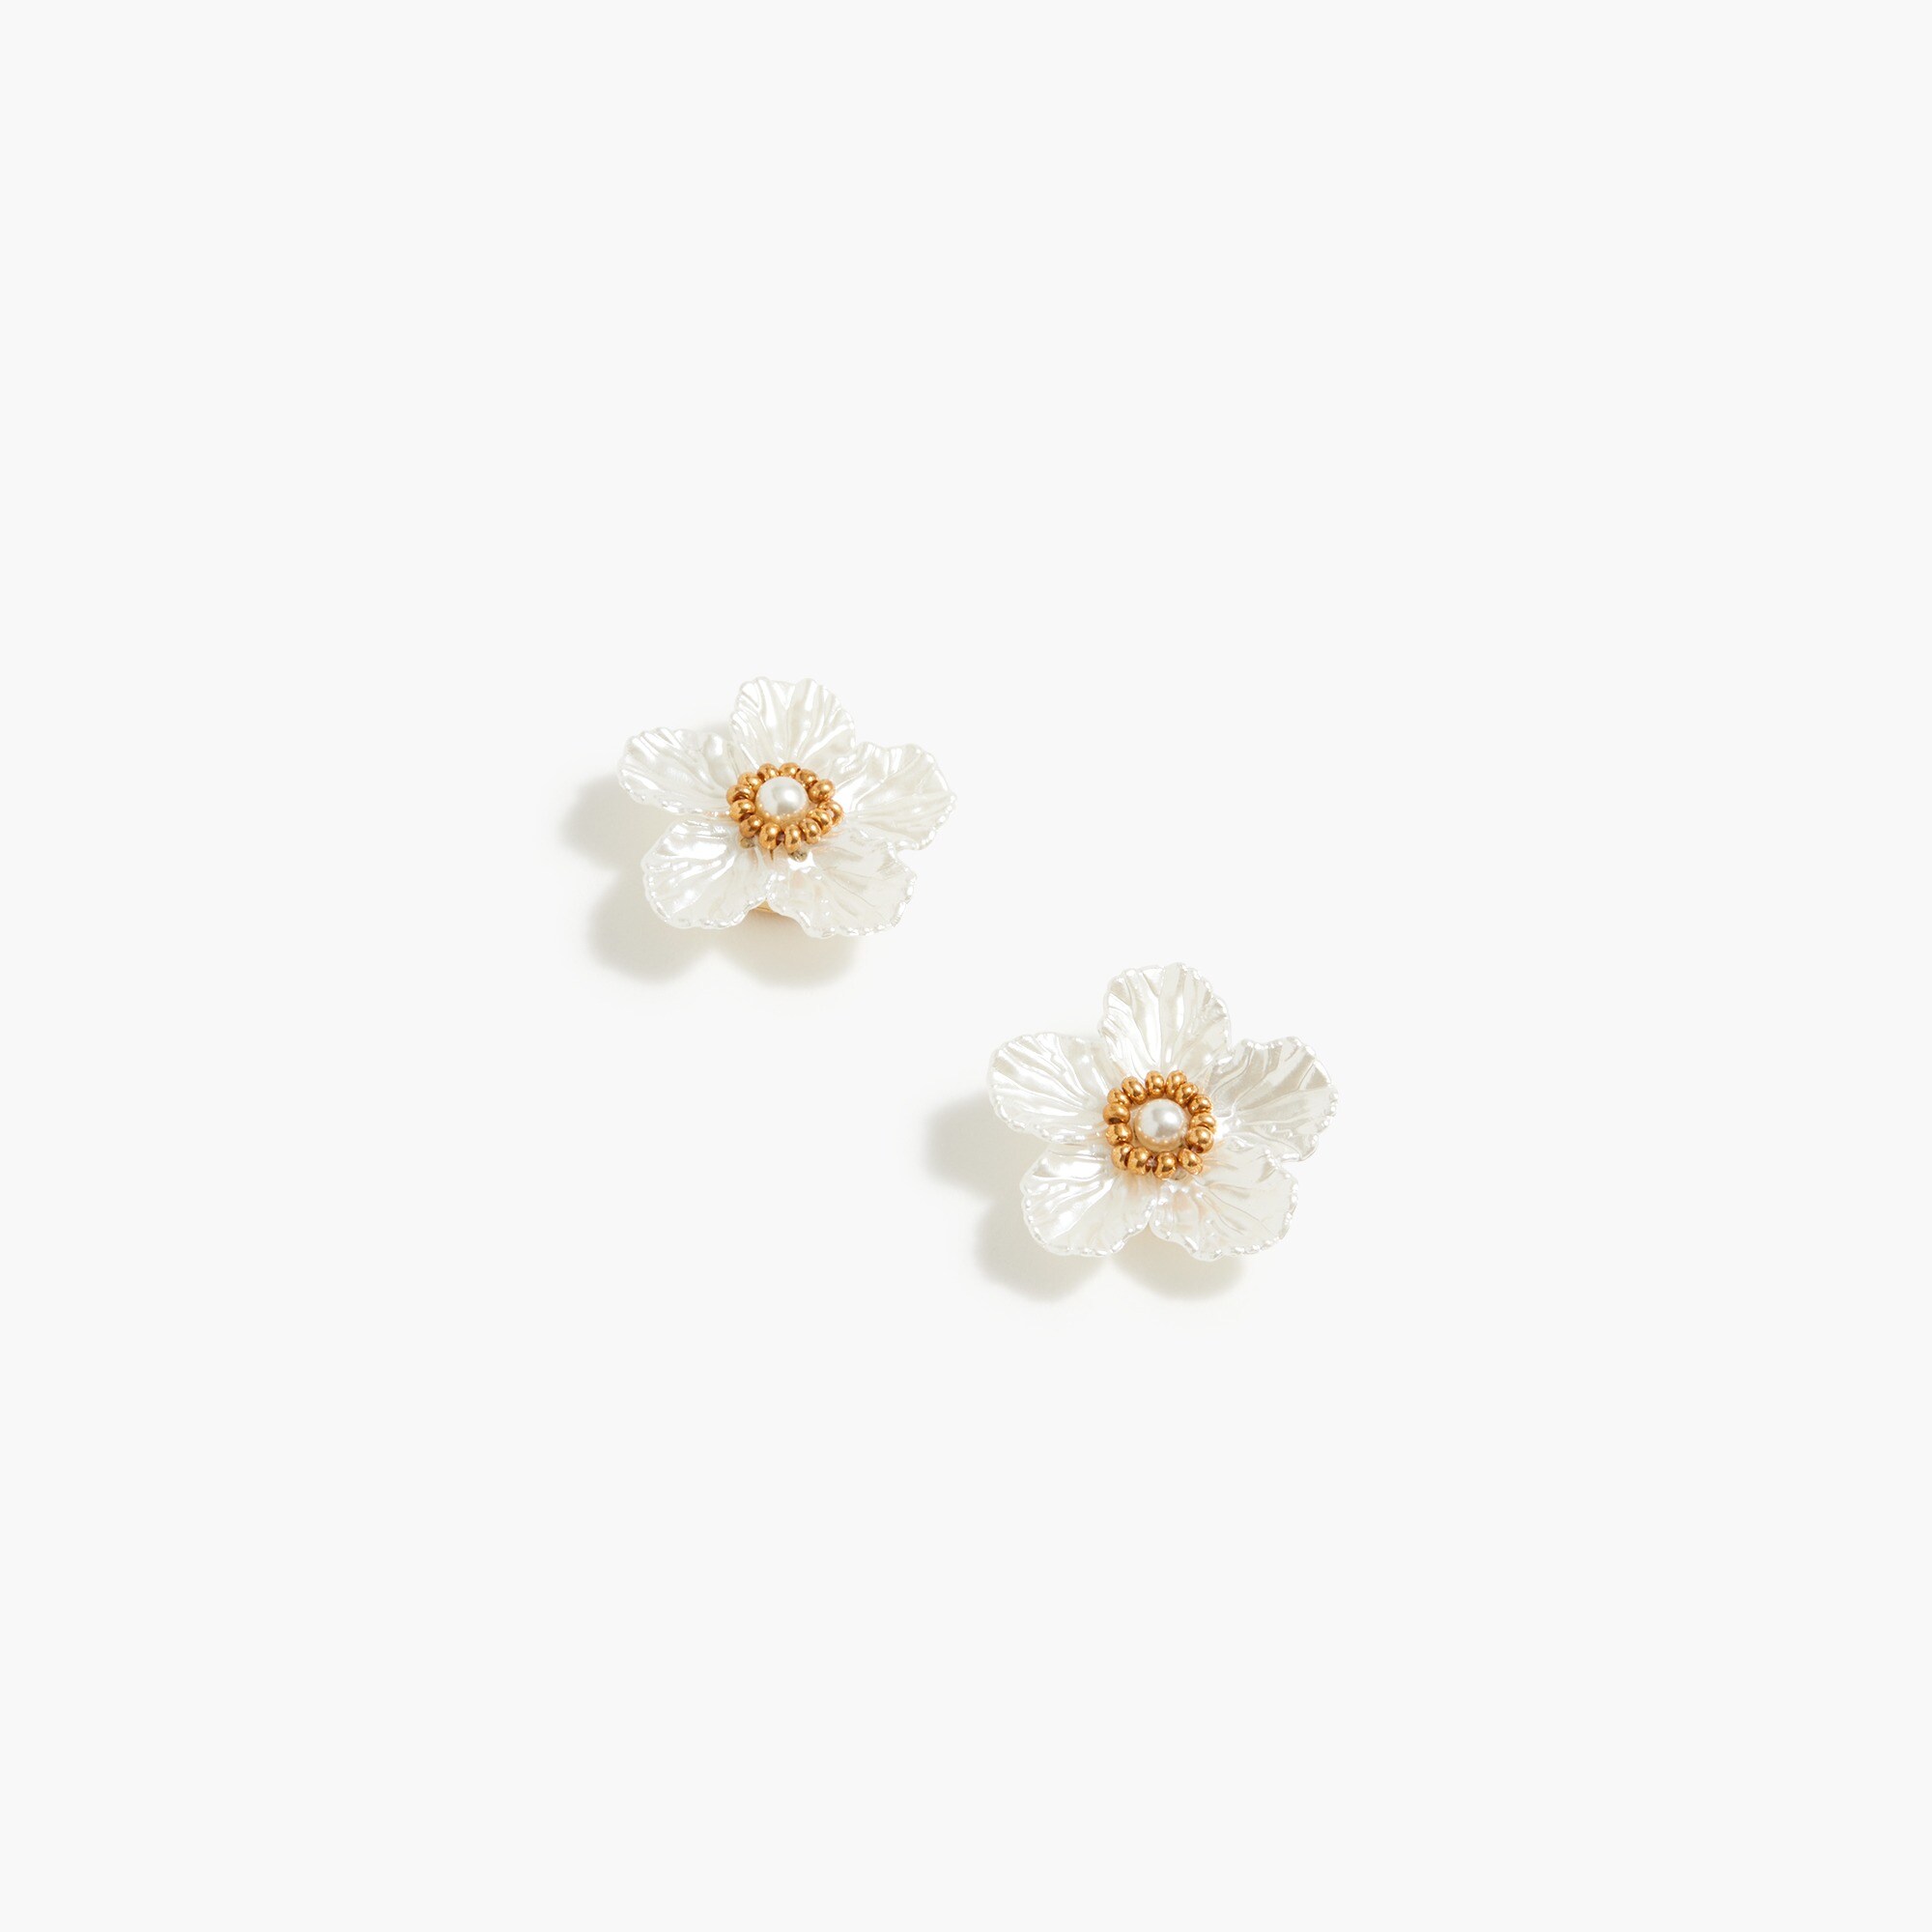  Pearl flower stud earrings